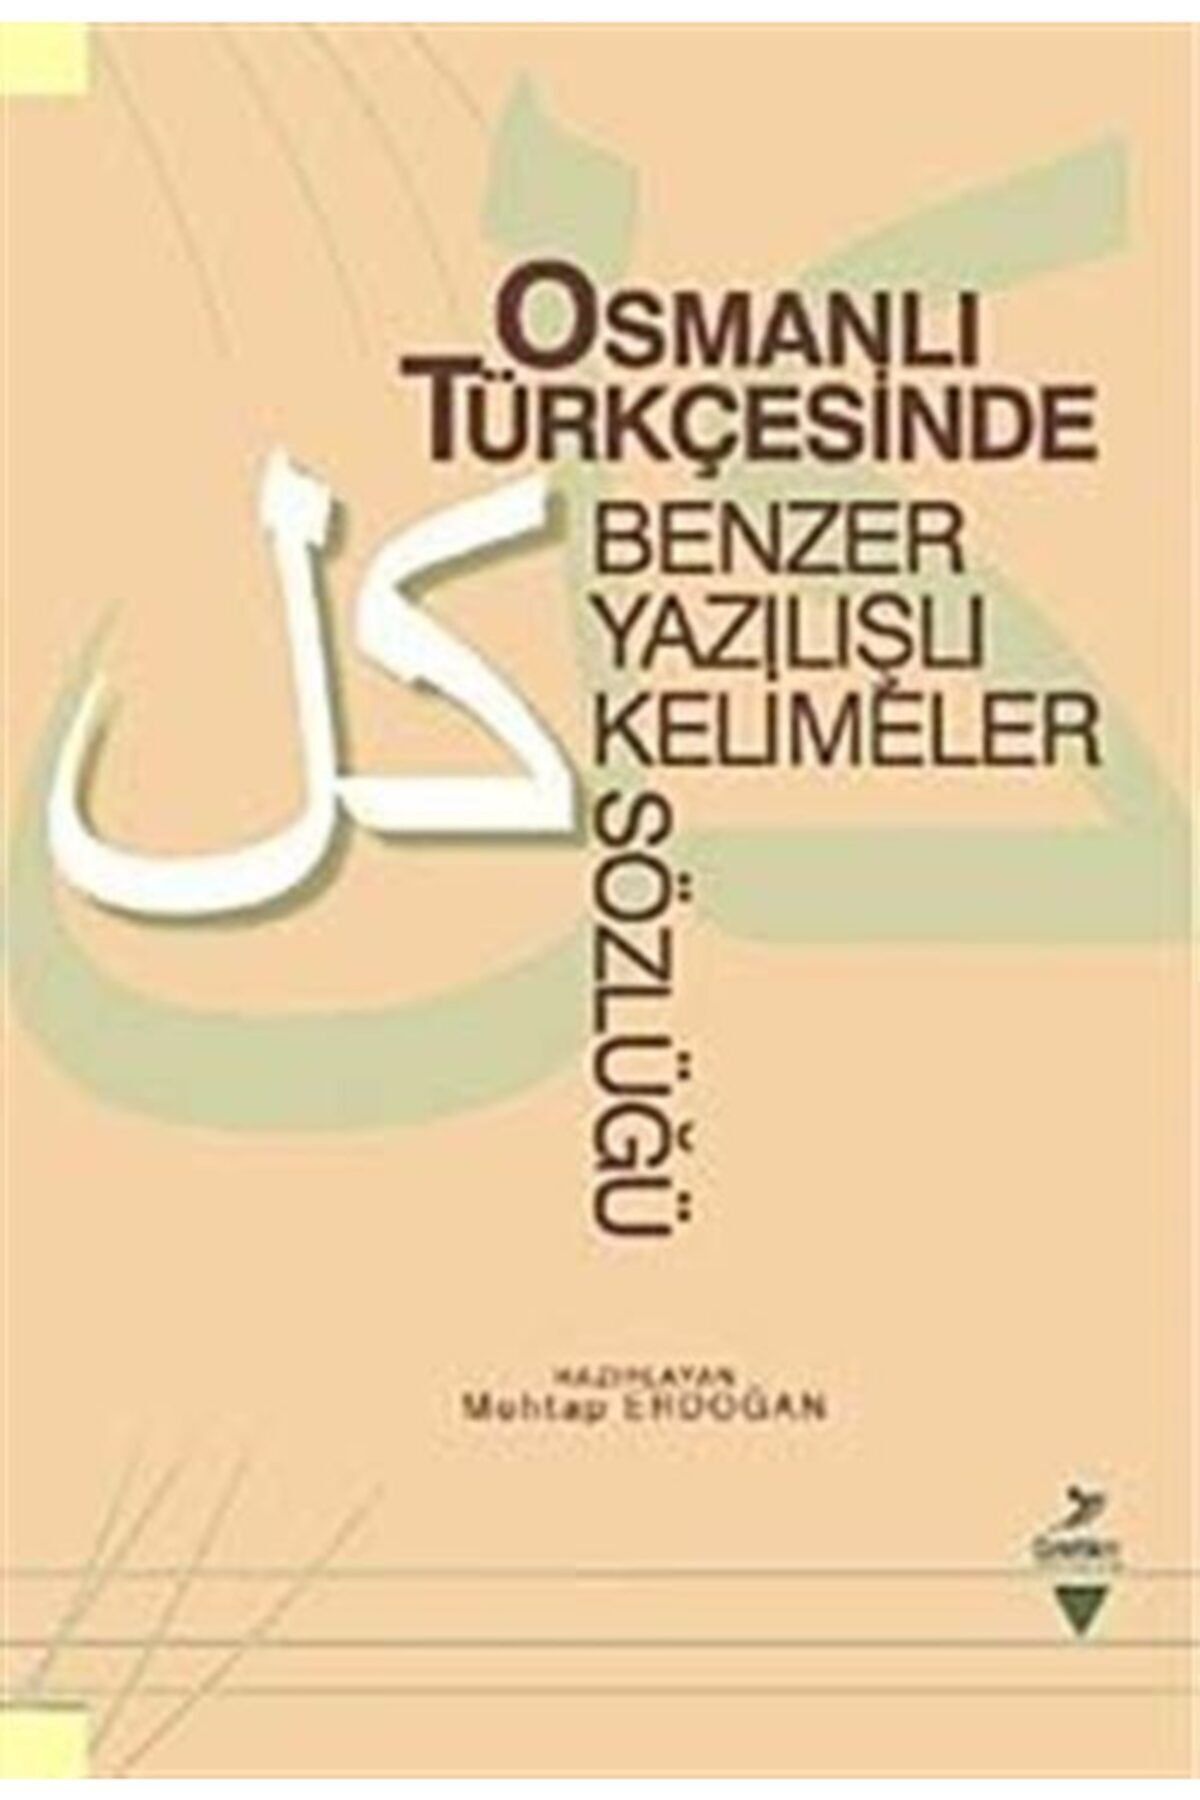 Grafiker Yayınları Osmanlı Türkçesinde Benzer Yazılışlı Kelimeler Sözlüğü - Mehtap Erdoğan